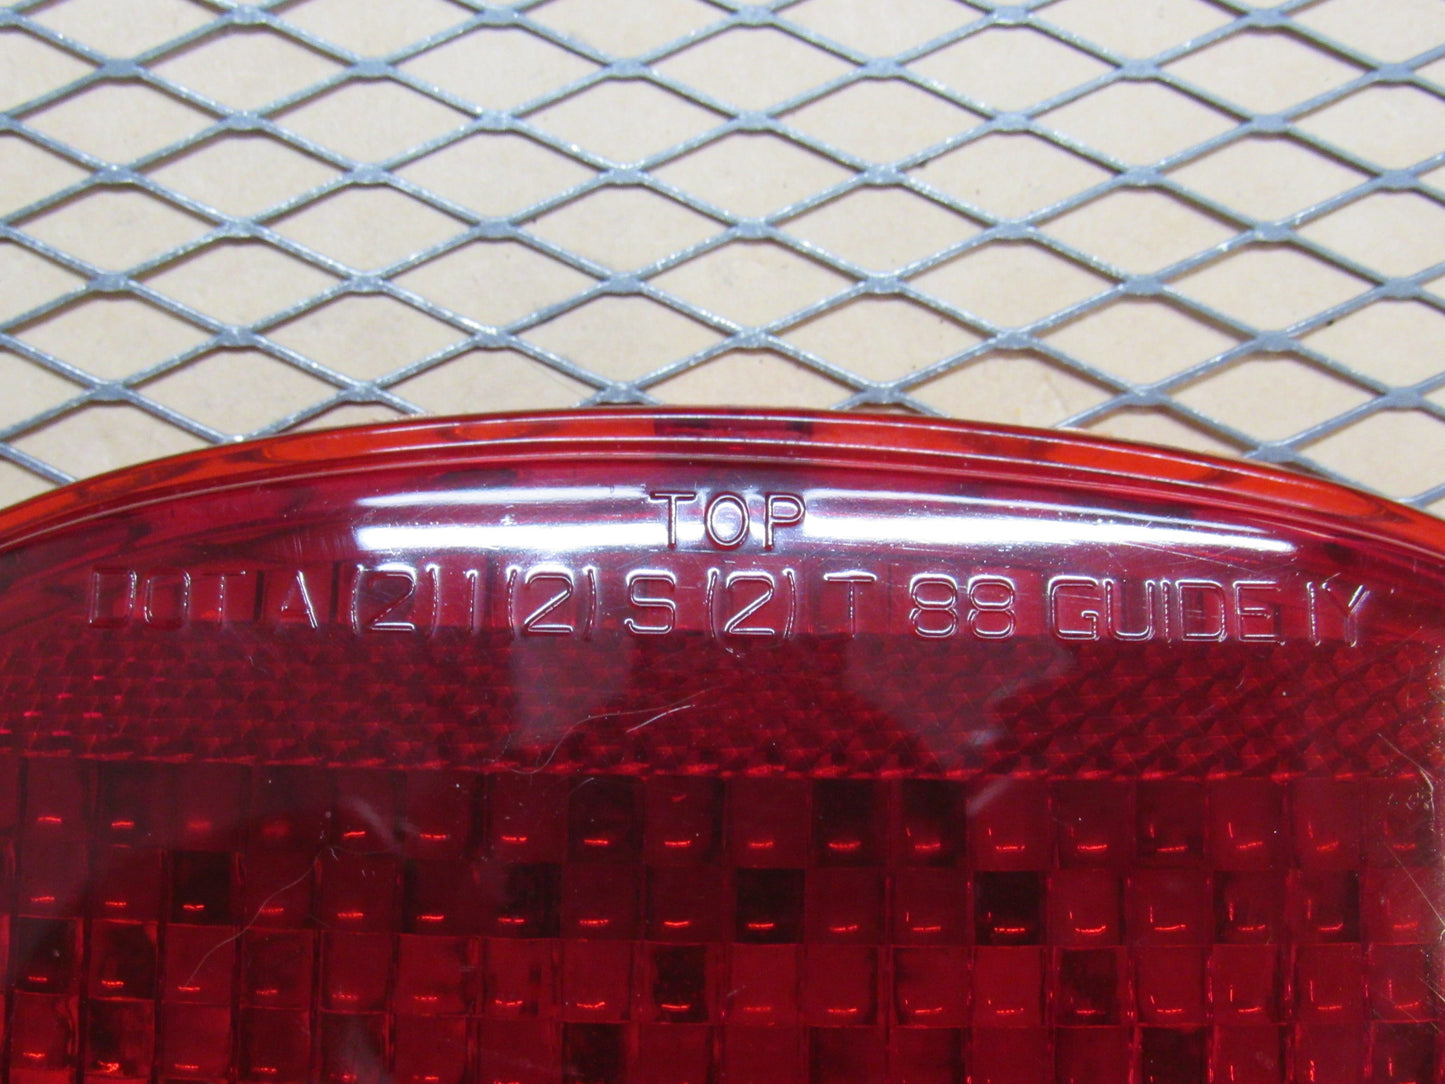 91 92 93 94 95 96 Chevrolet Corvette OEM Tail Light Lamp Lens Cover